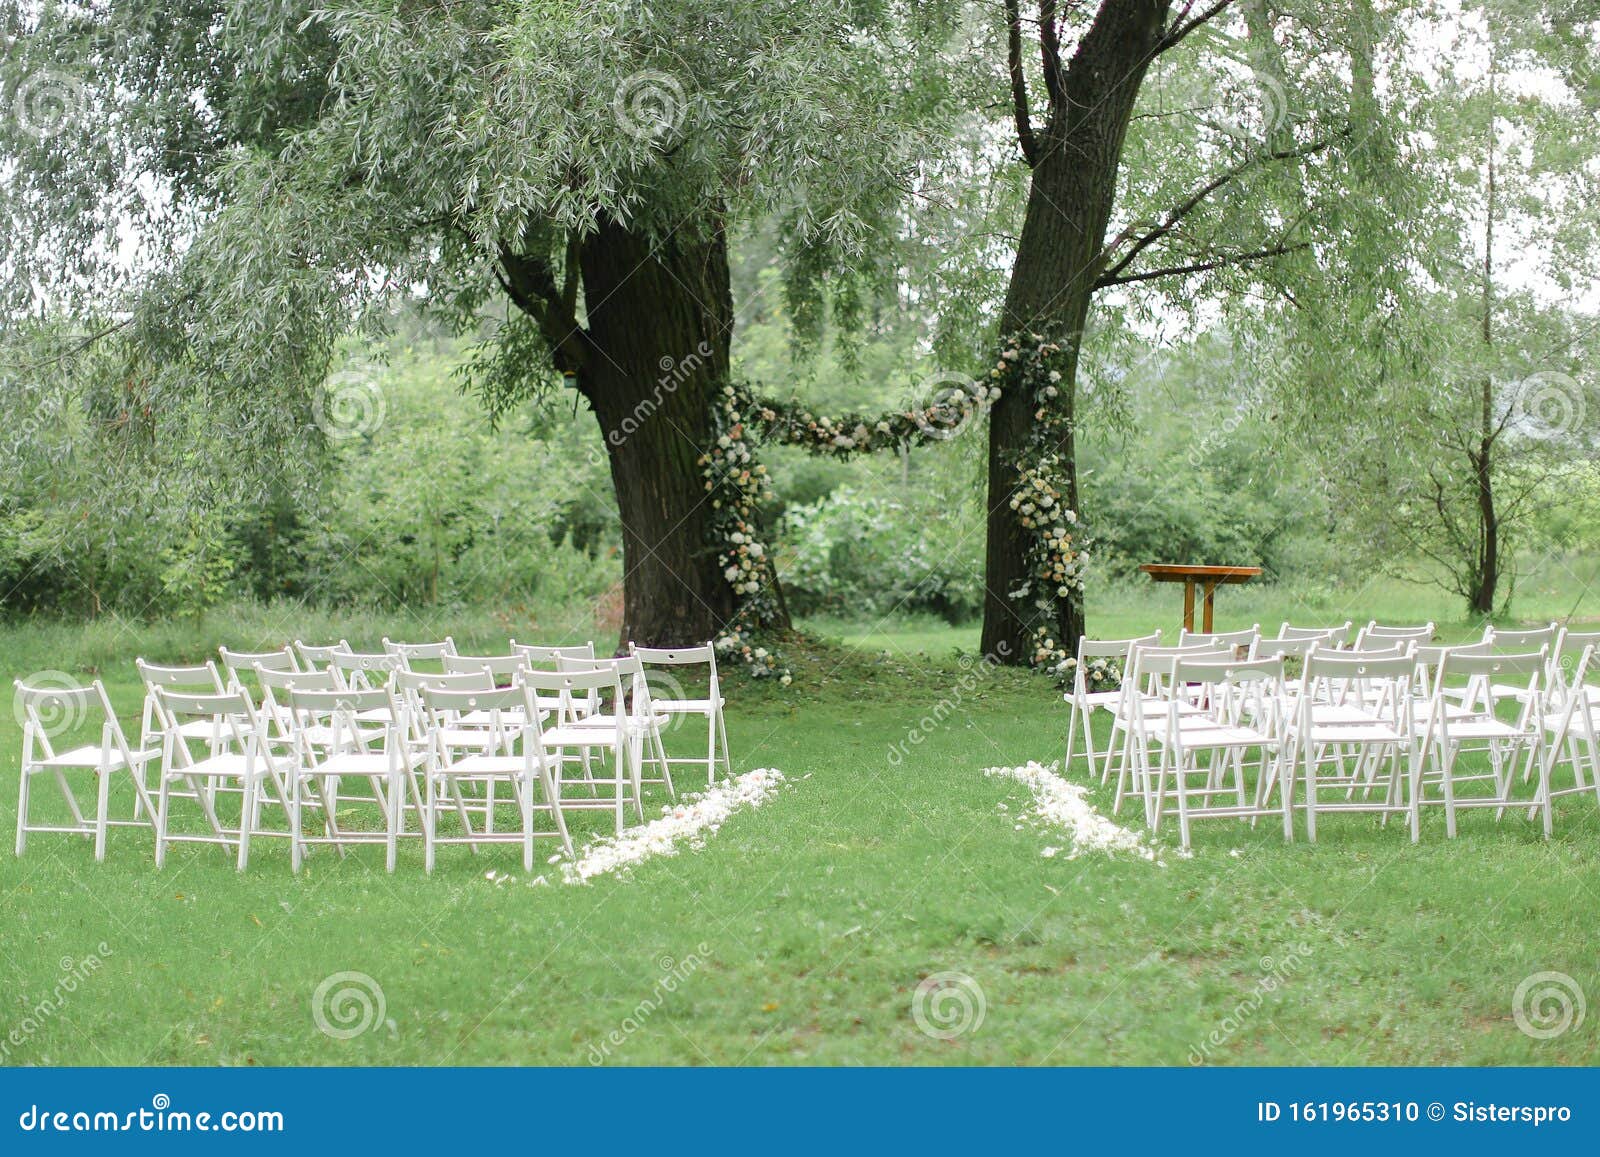 hardop Een bezoek aan grootouders as Tenderbloemetjes Voor Bruiloft En Witte Stoelen in Het Park Stock Foto -  Image of decor, sier: 161965310